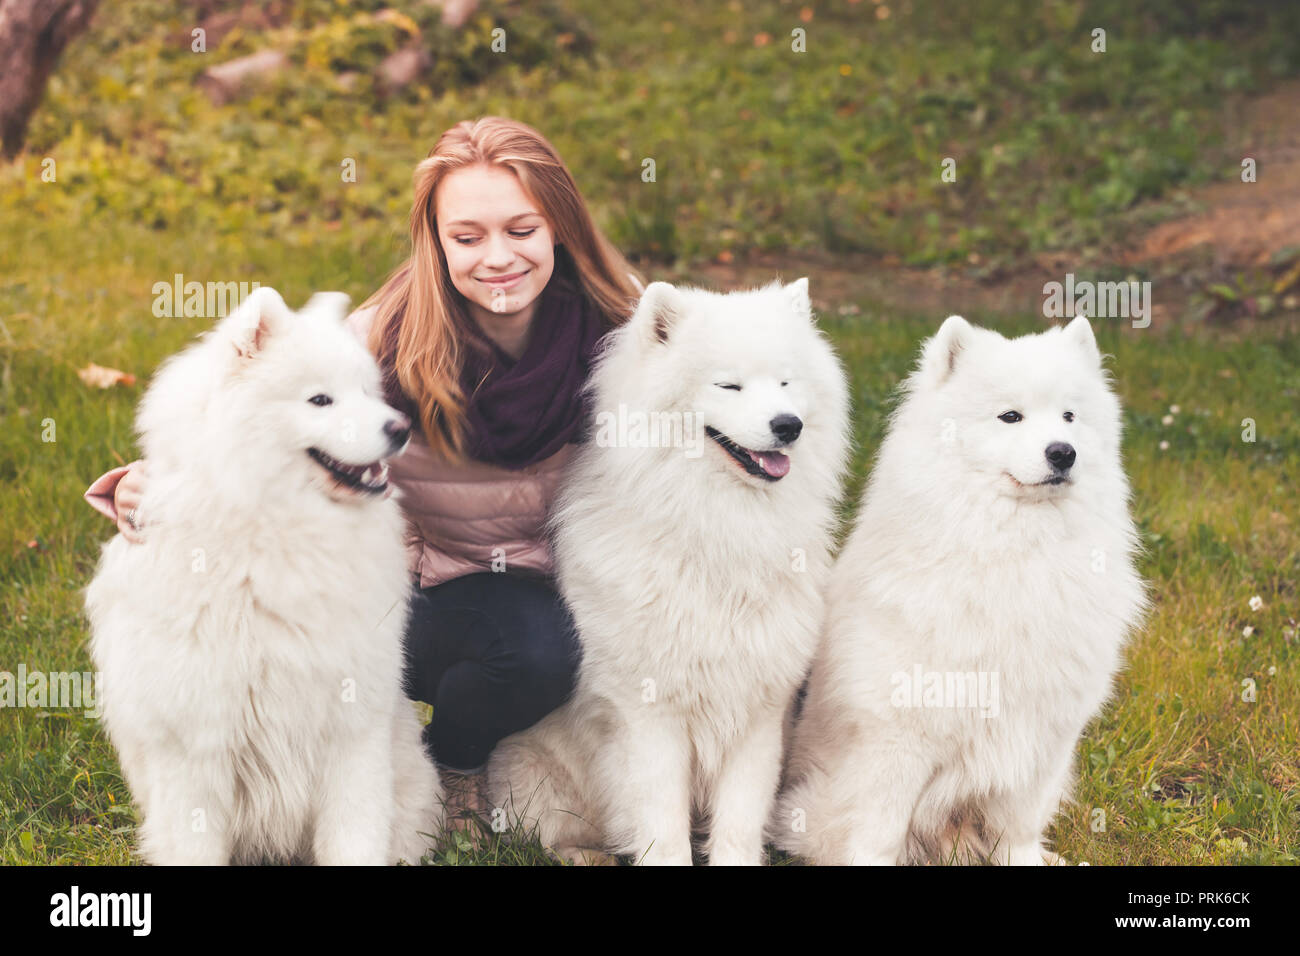 Kaukasische Mädchen mit drei weiße Samojeden Hunde auf einem Spaziergang im Herbst Park Stockfoto